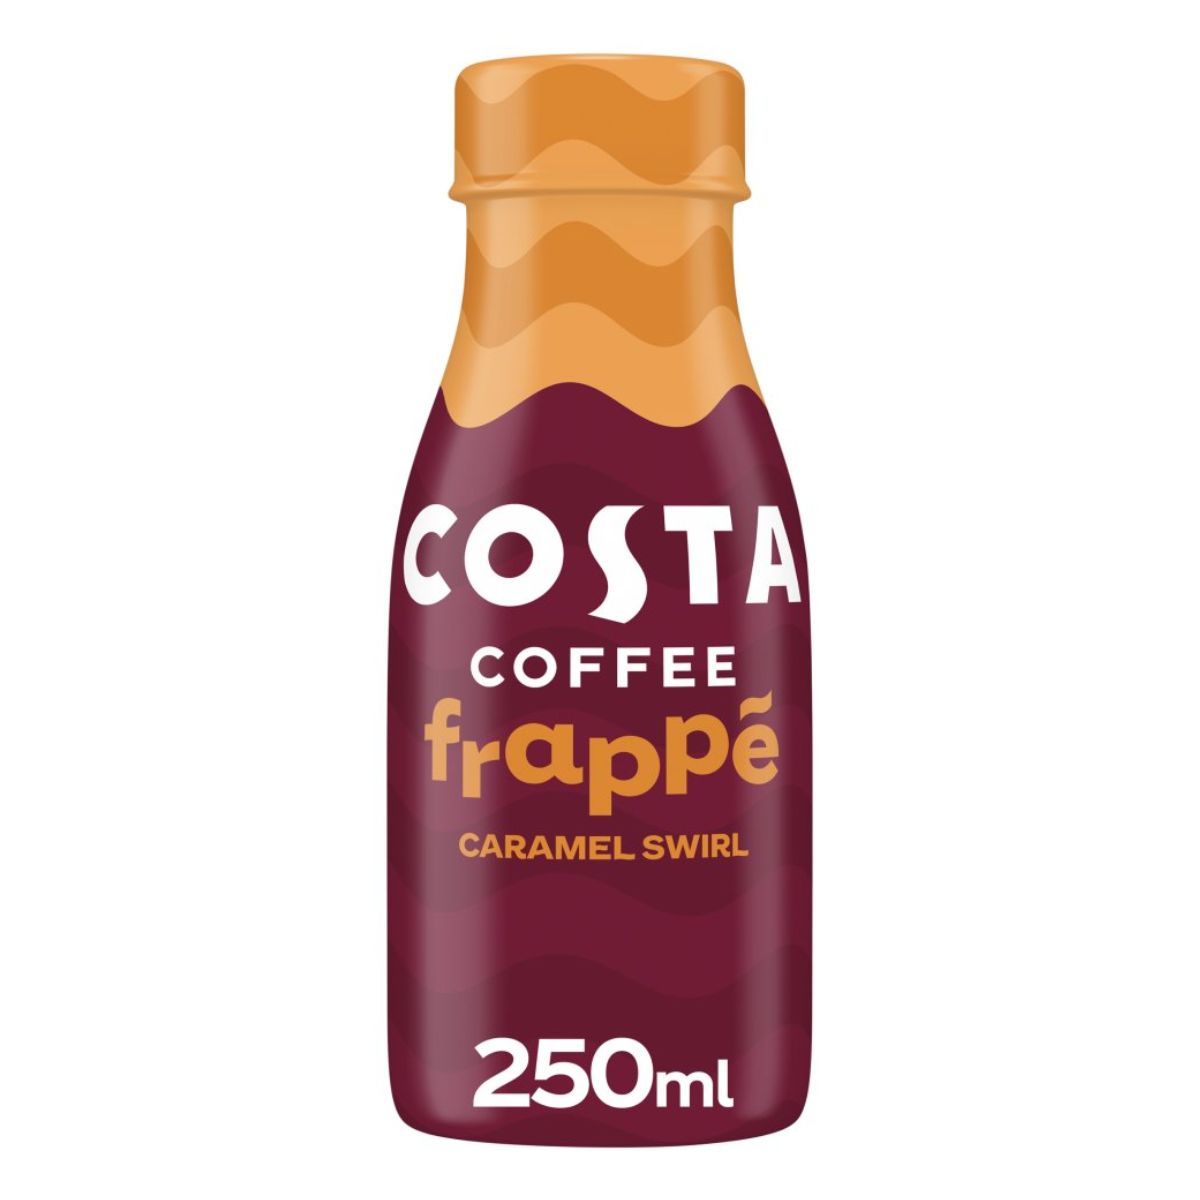 Costa - Coffee Frappe Caramel Swizzle - 250ml.